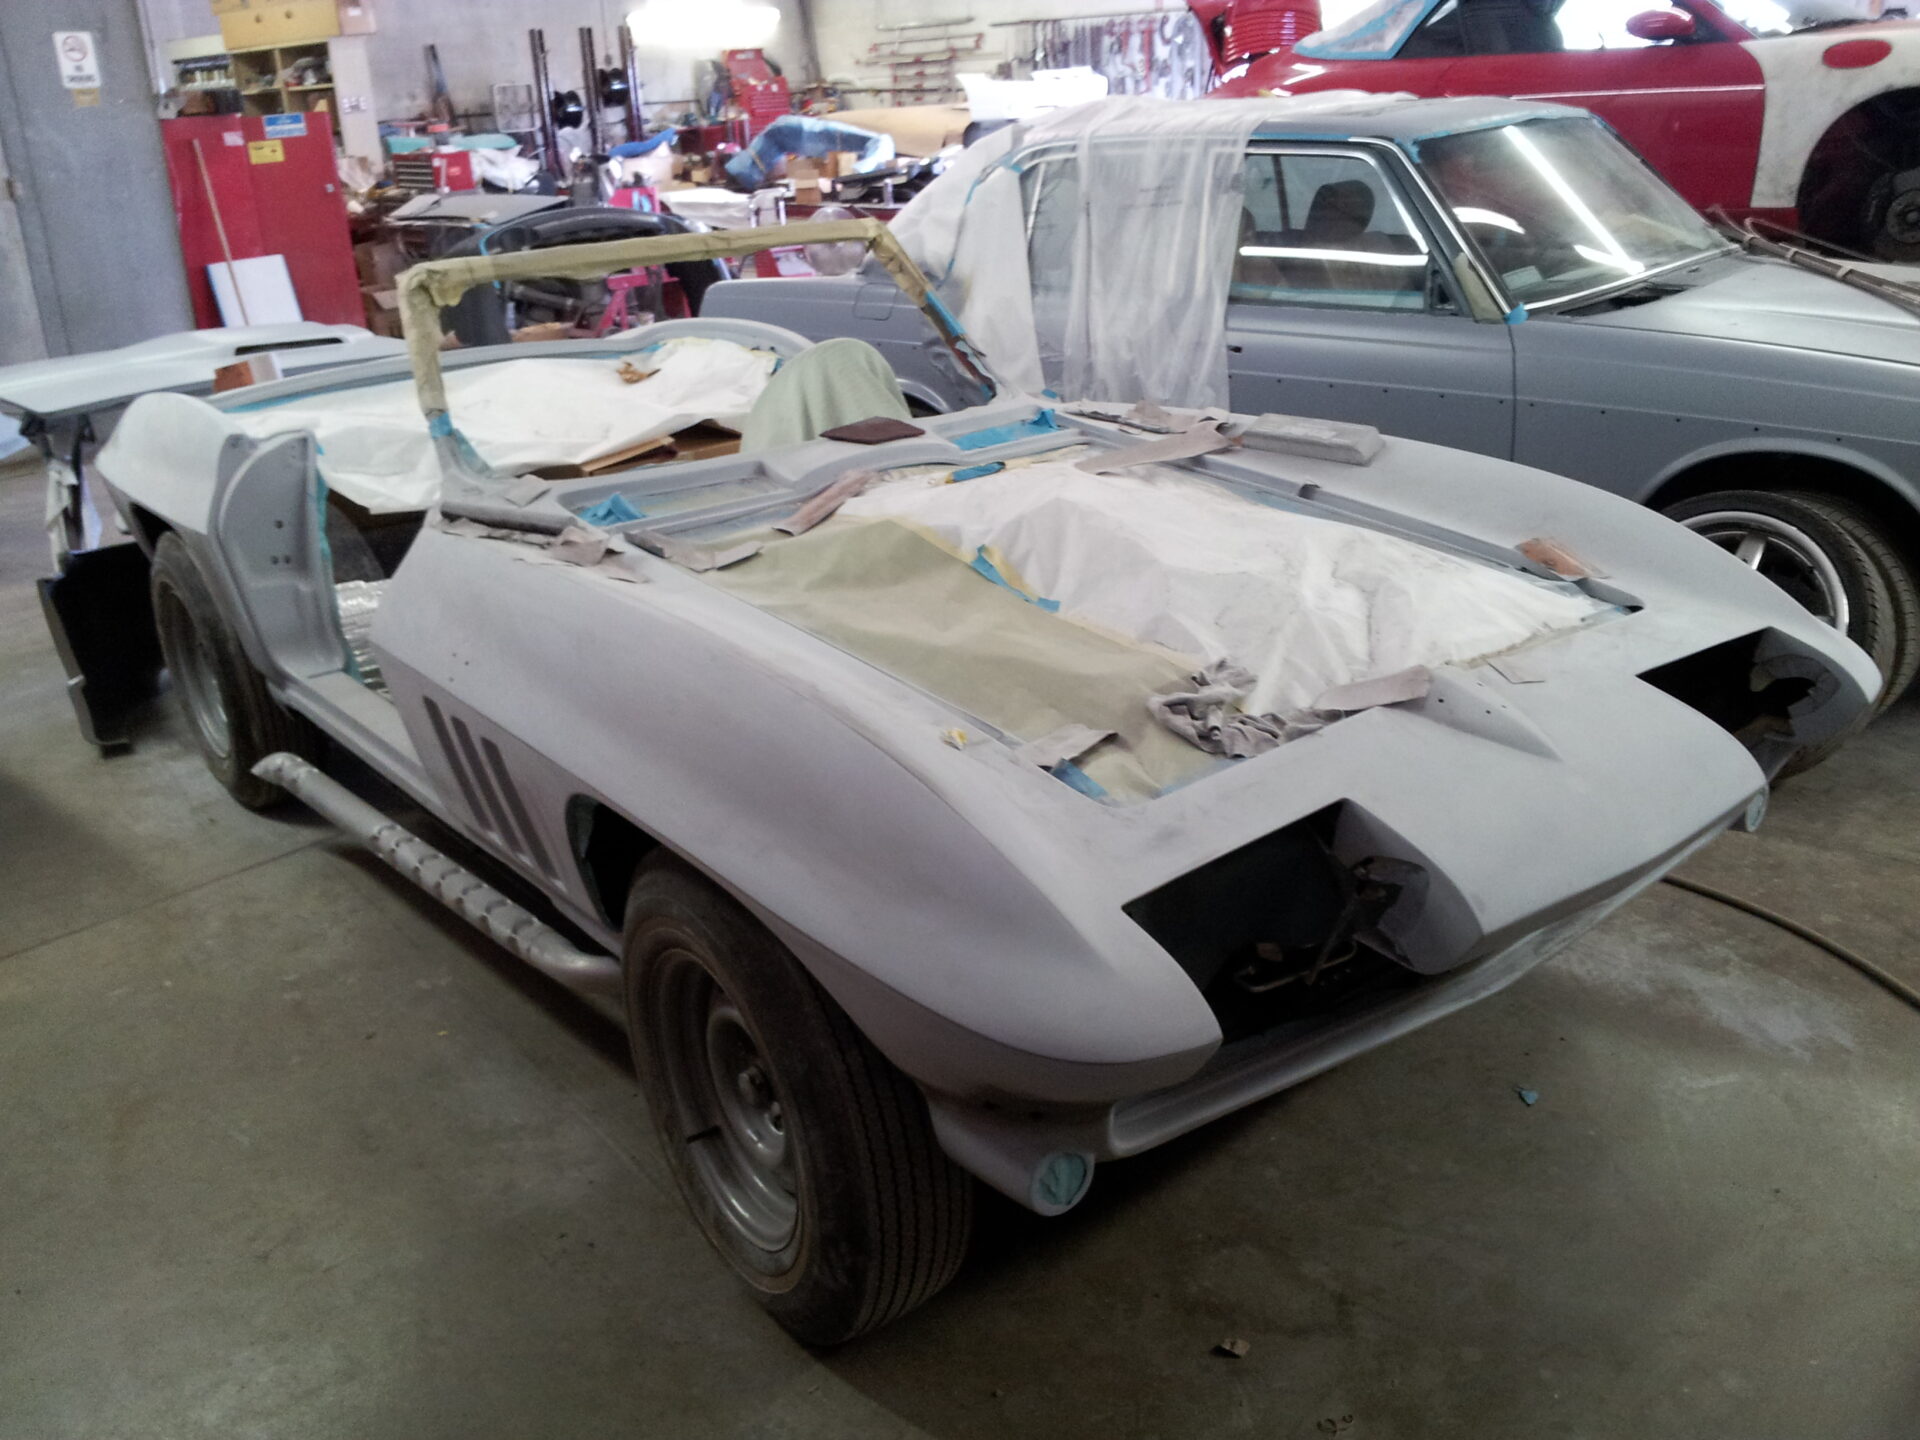 A 1966 Corvette ready for a paint job